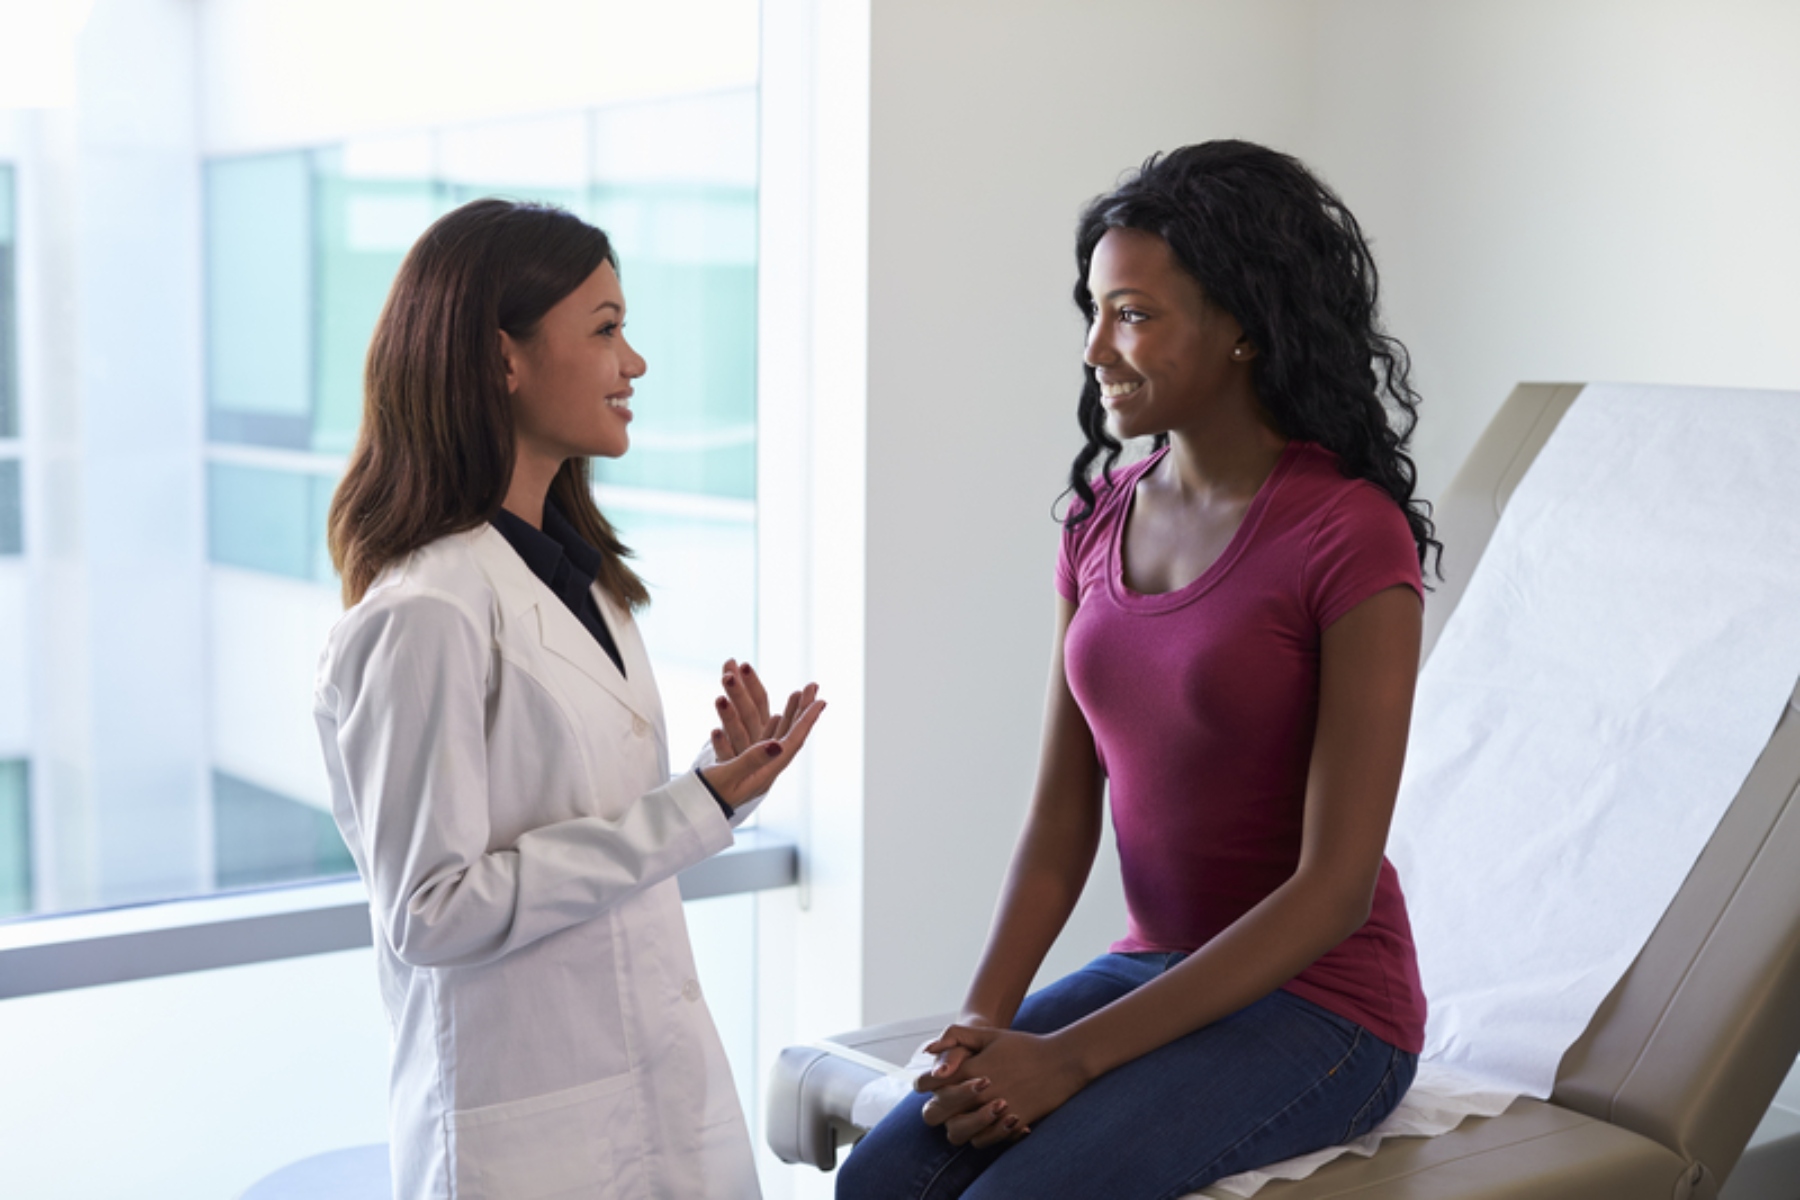 Γυναικολόγος επίσκεψη: Γιατί η επίσκεψη σε γυναικολόγο είναι δυσάρεστη για μερικές γυναίκες;